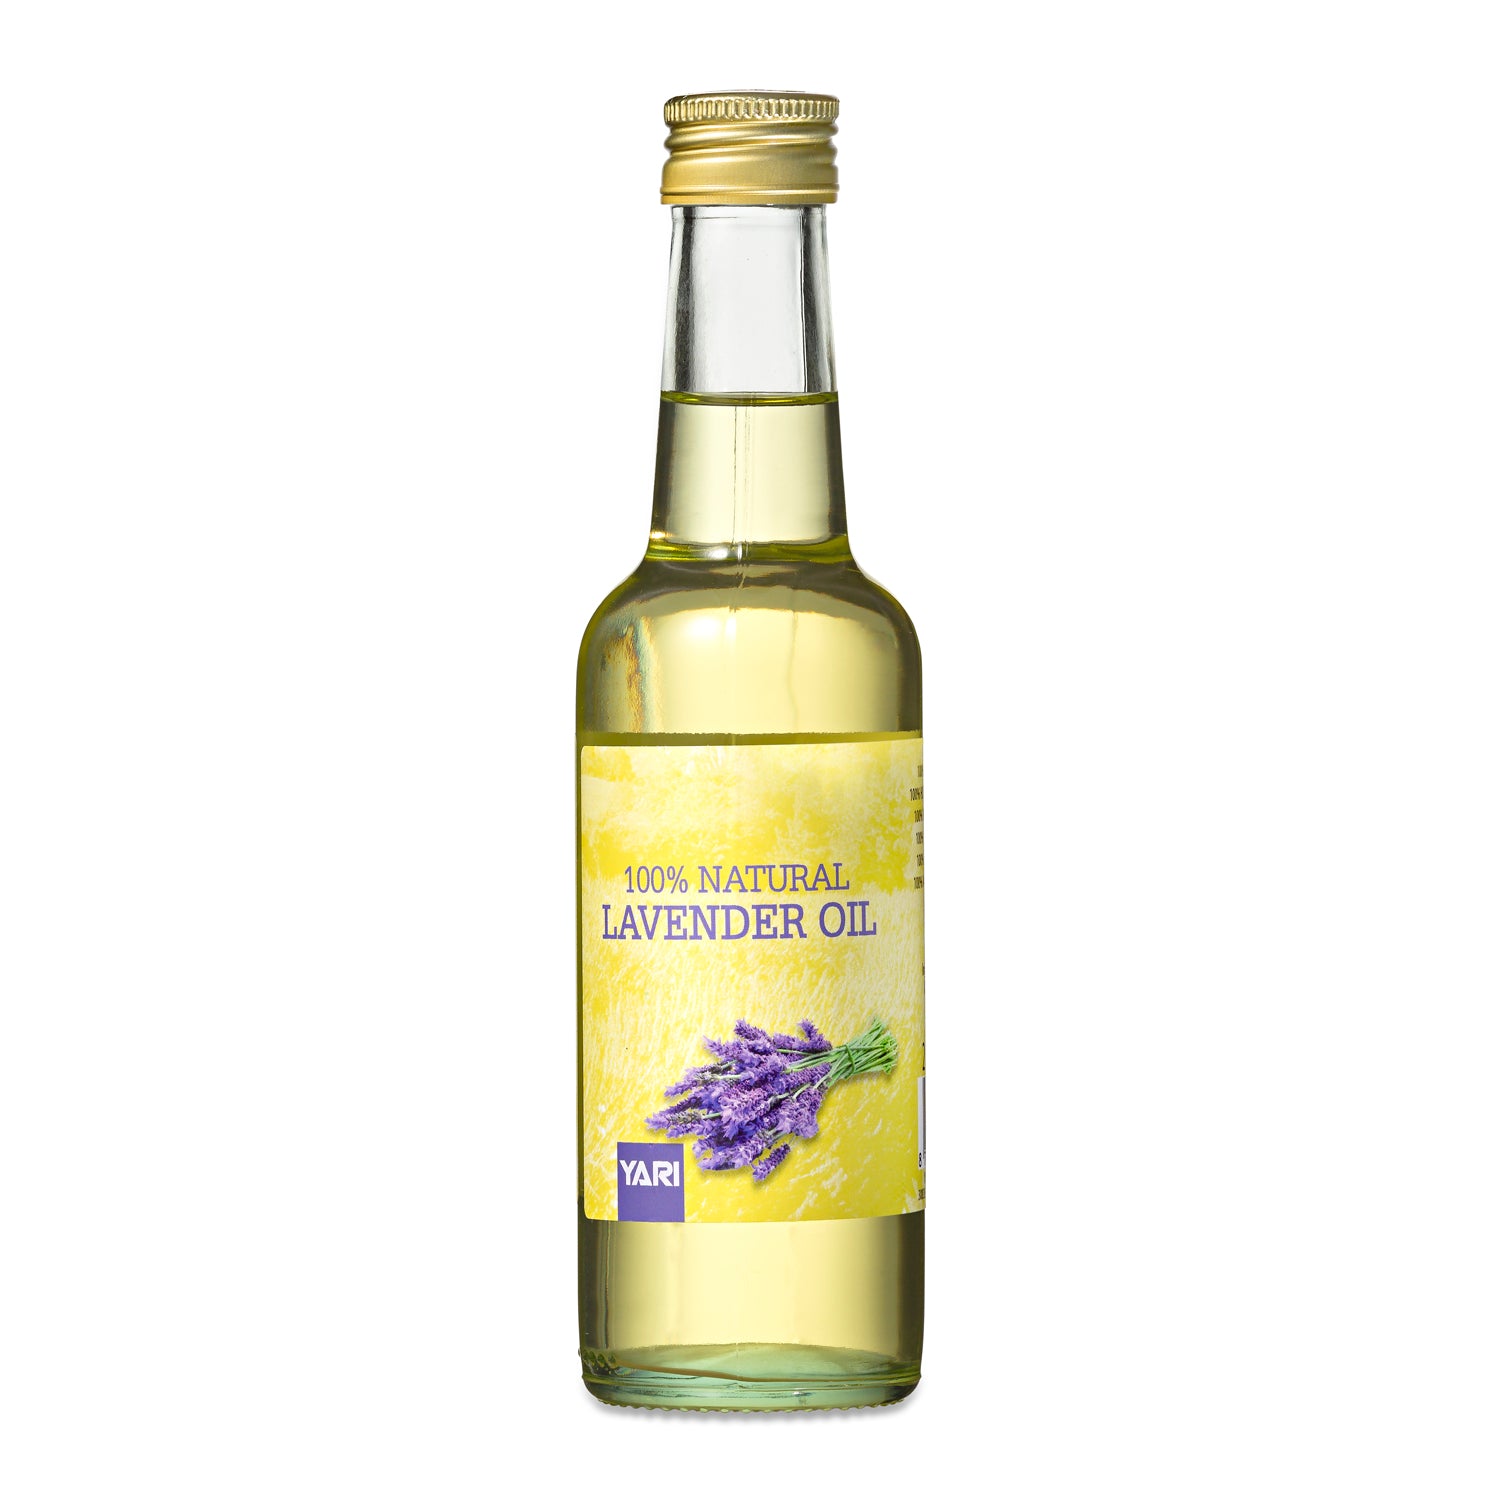 Yari - 100% Natural Lavender Oil 250ml